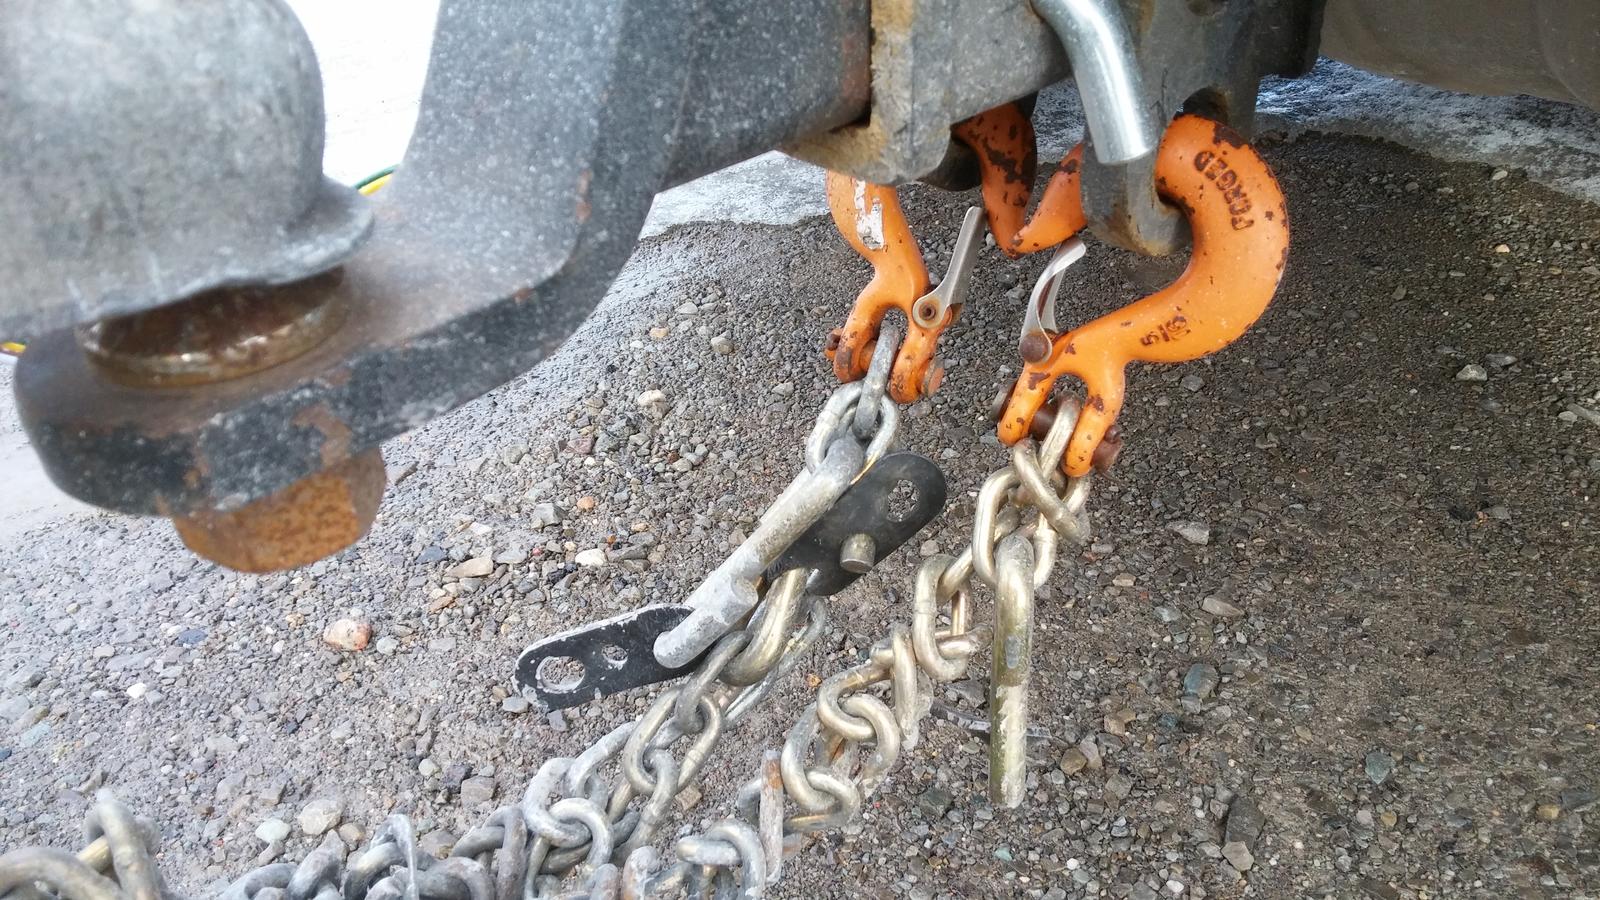 U-Haul safety chain hooks won't fit Cayenne factory hitch